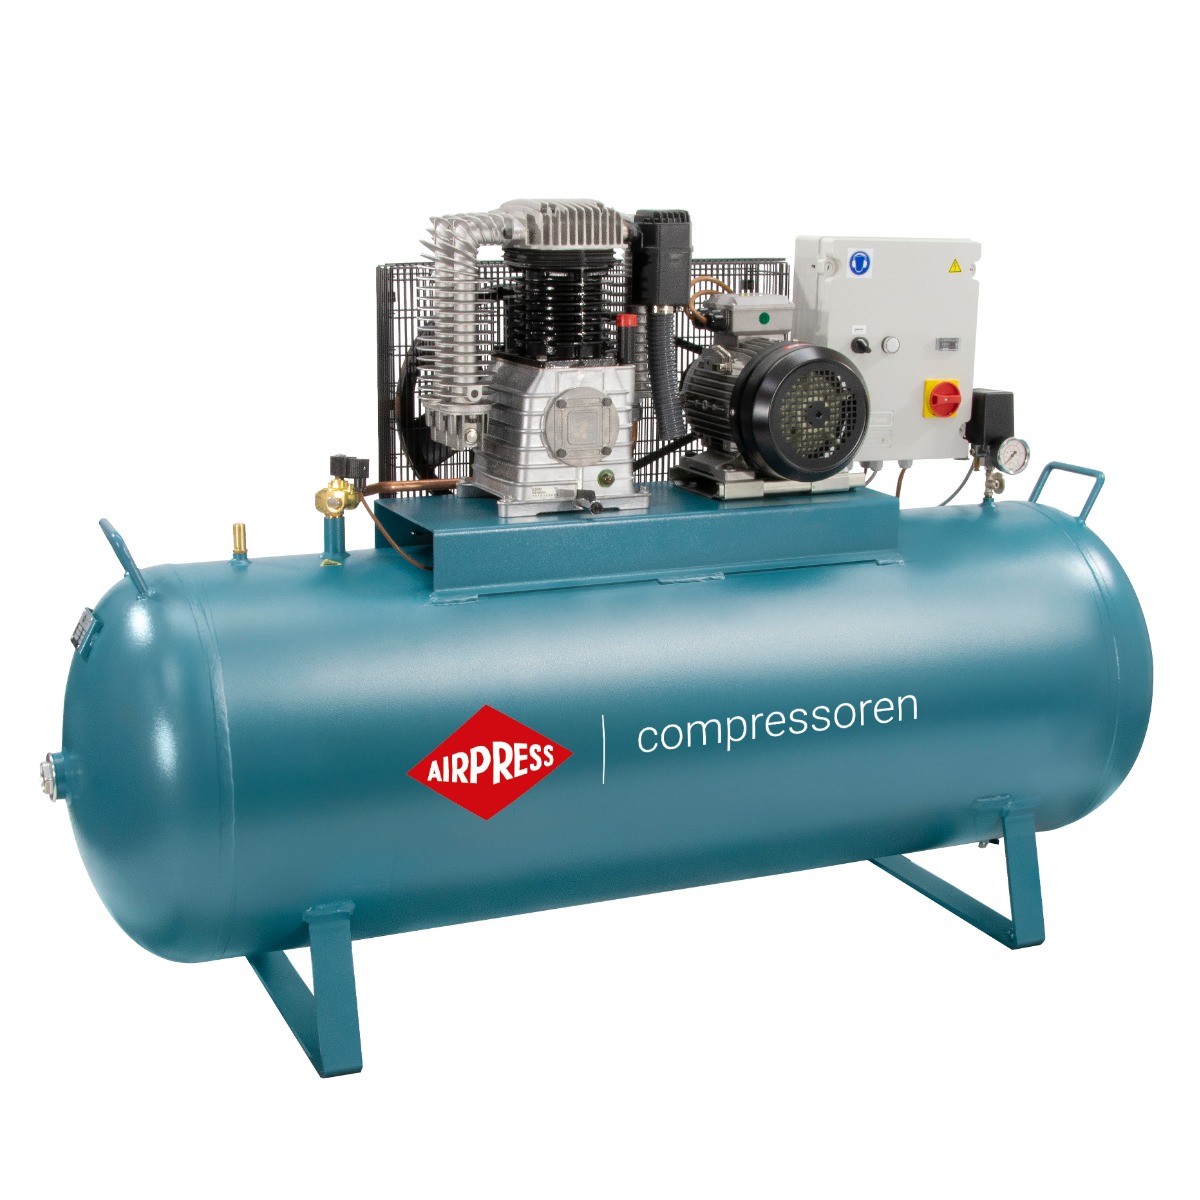 Kompressor K 500-1000S - 14 bar - 500l